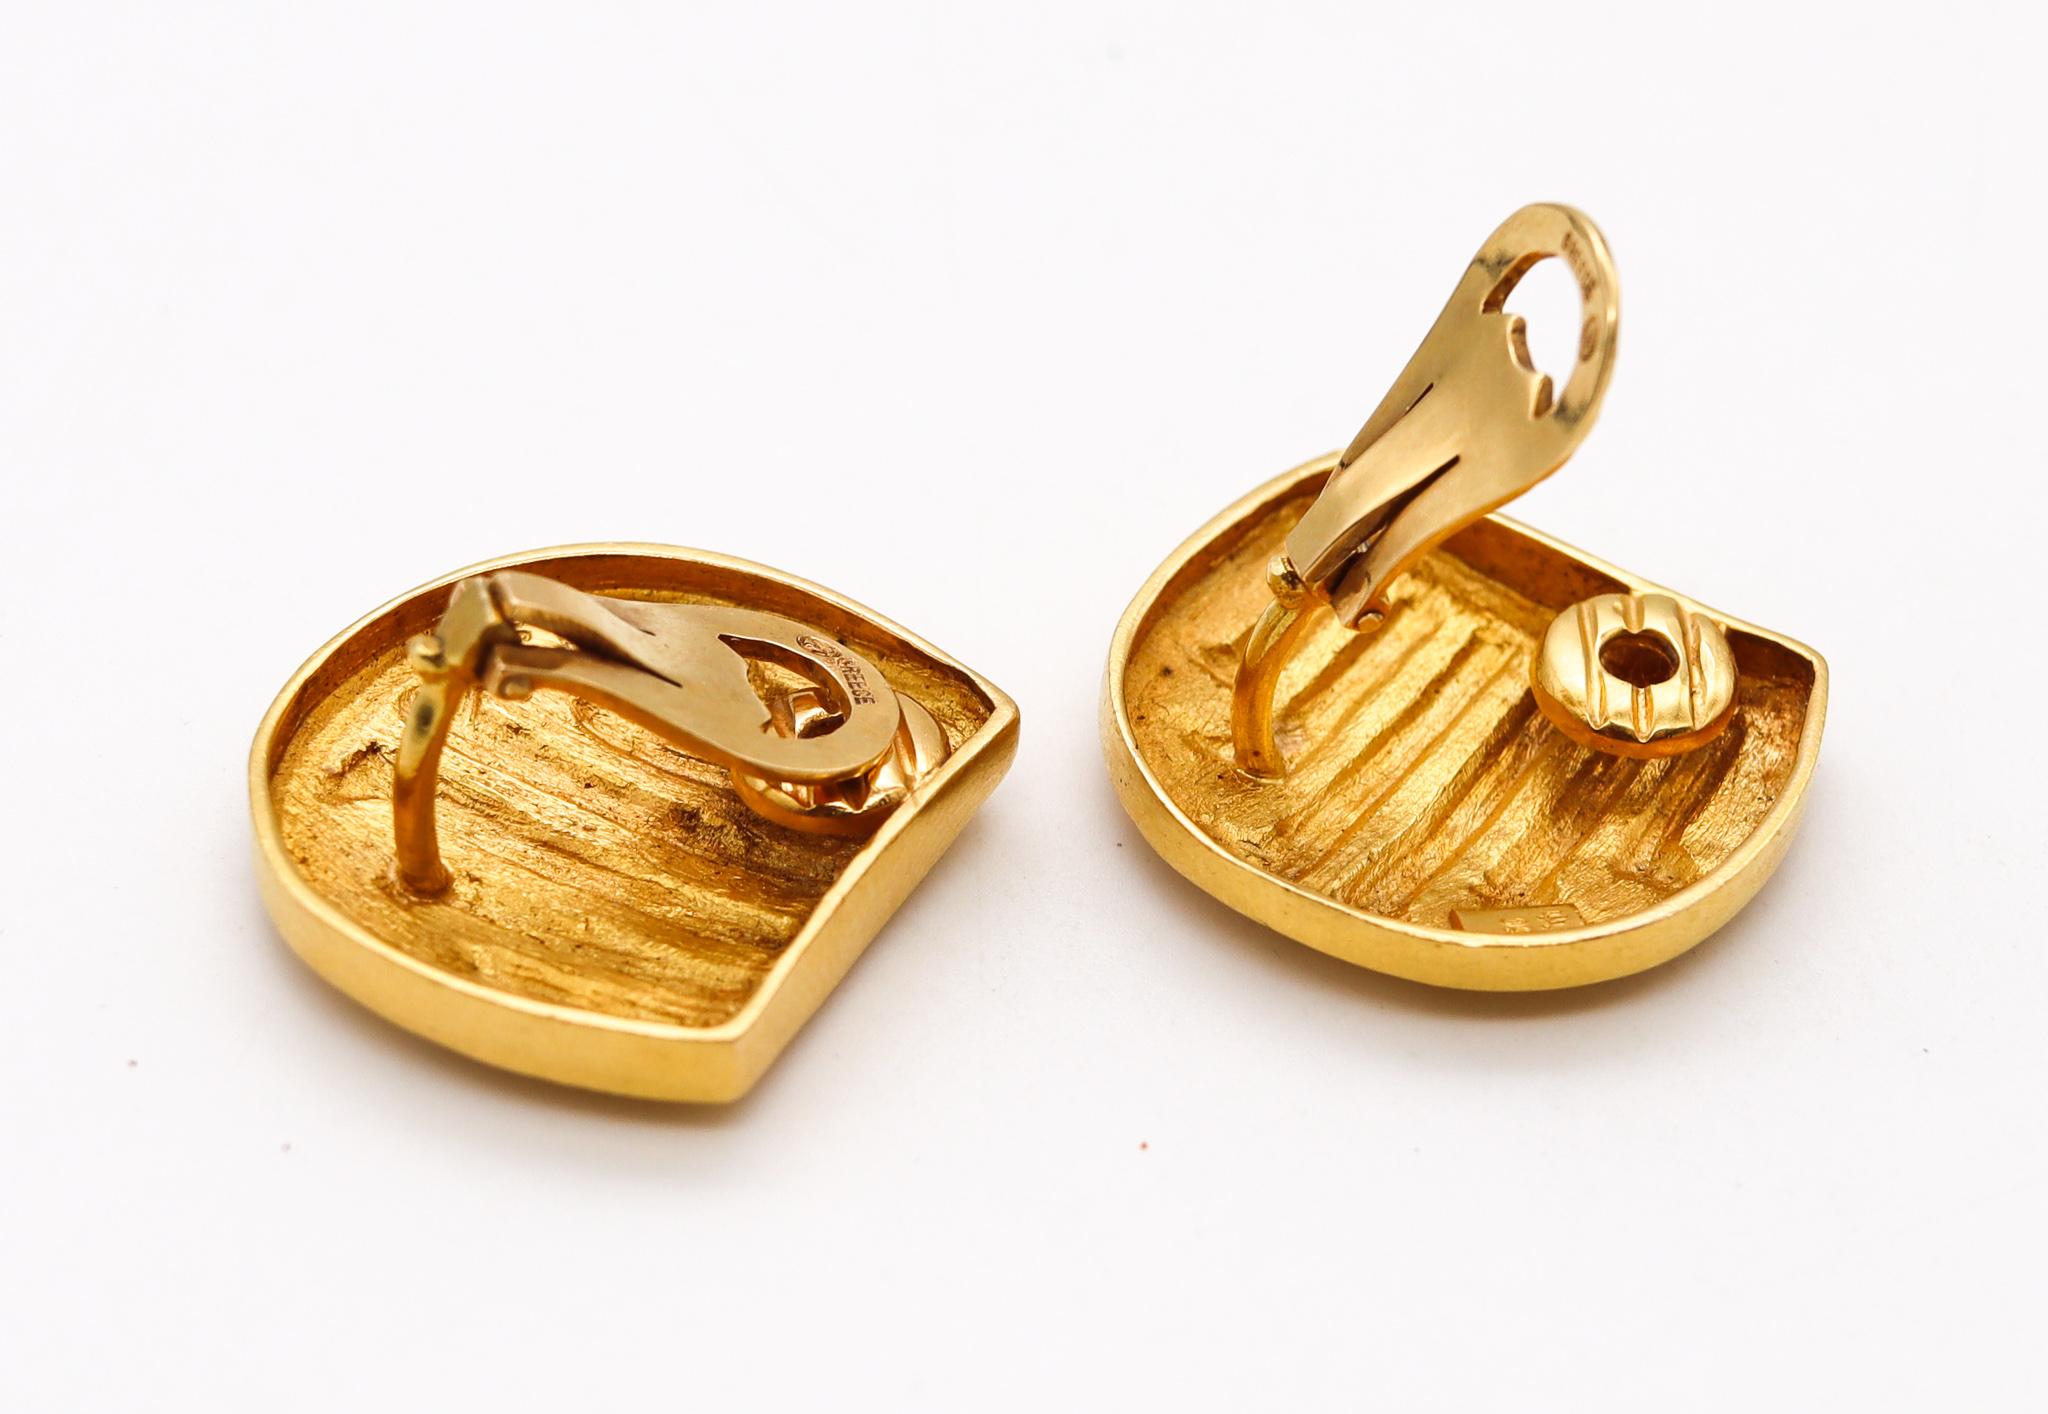 Une paire de boucles d'oreilles conçue par Ilias Lalaounis.

De belles et rares pièces géométriques, créées en Grèce par la maison de joaillerie Lalaounis, dans les années 1970. Ces superbes boucles d'oreilles ont été soigneusement réalisées en or